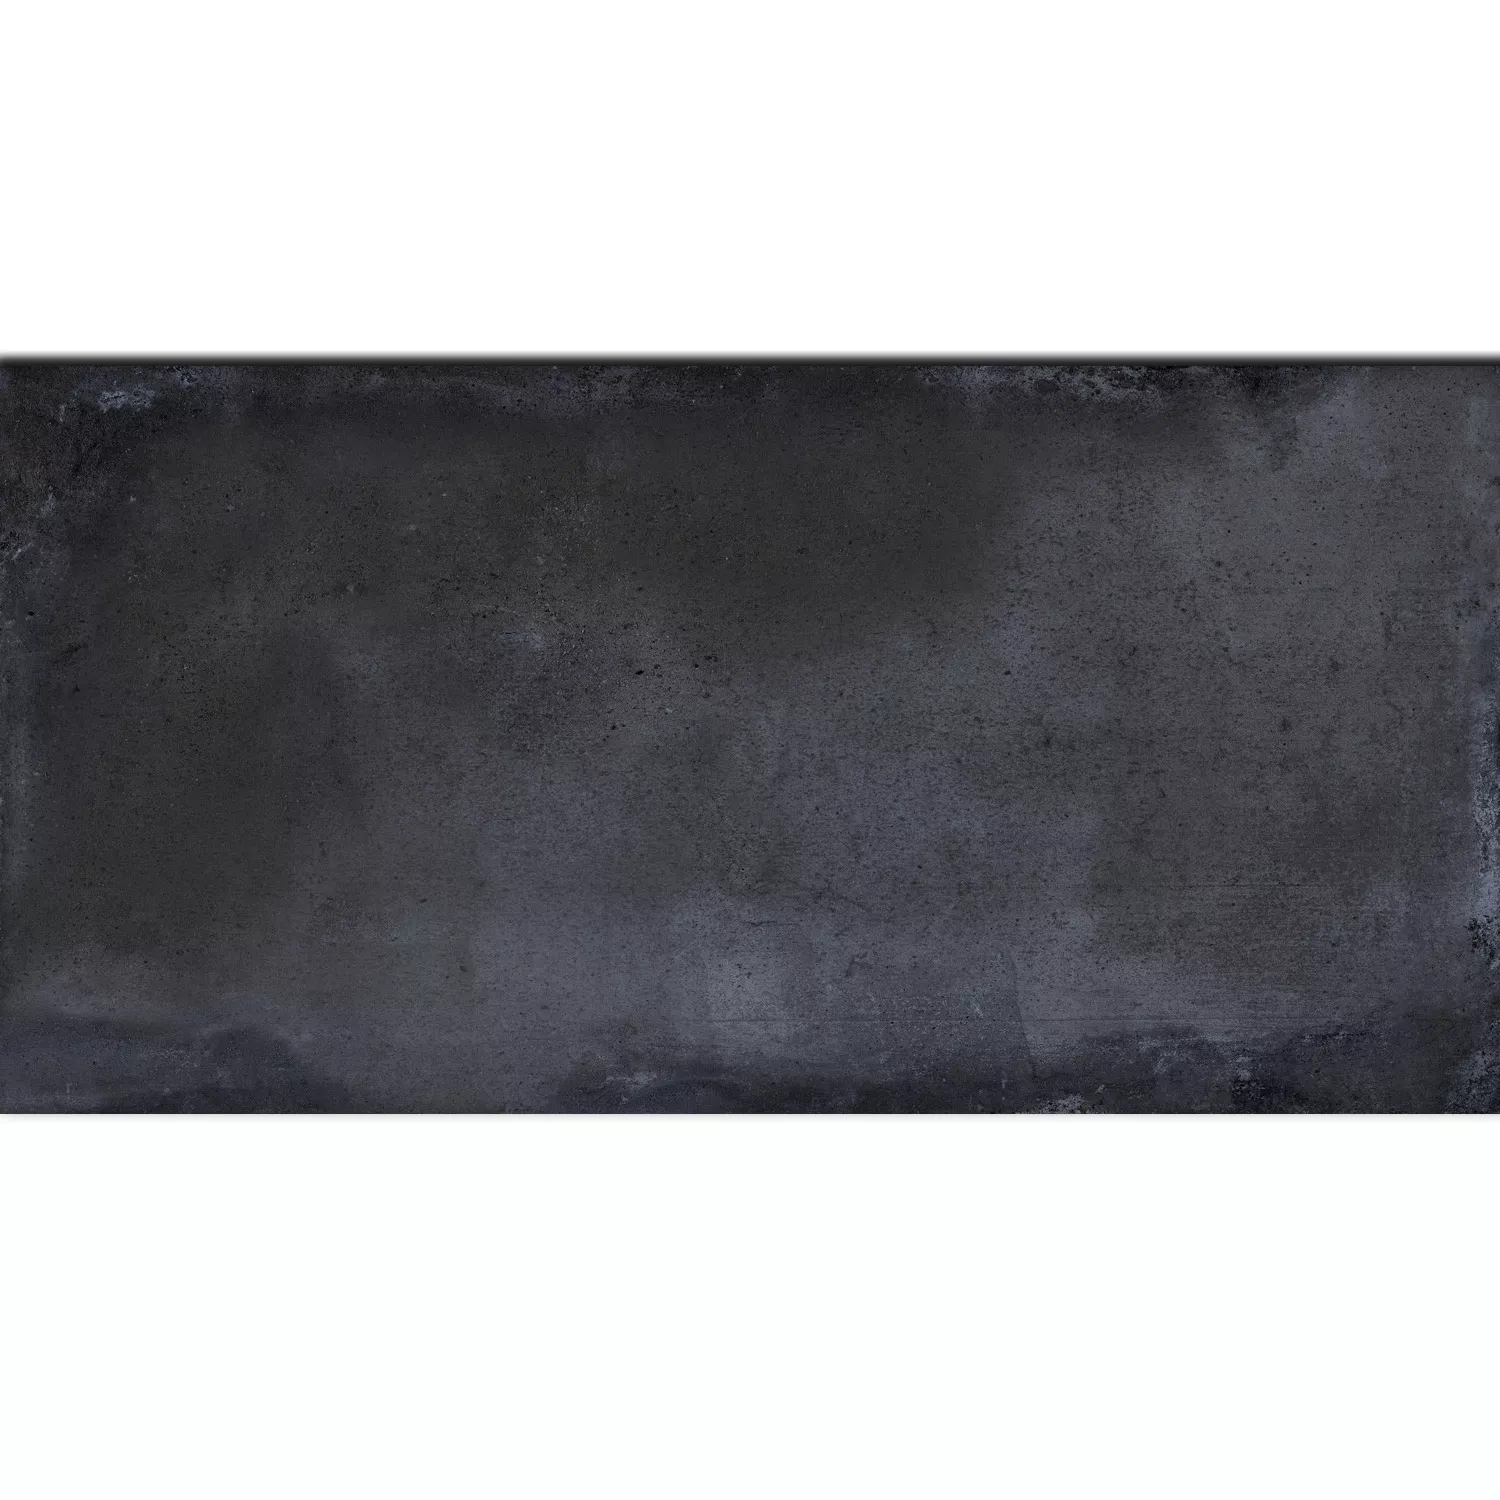 Πλακάκι Δαπέδου Εμφάνιση Tσιμέντου Maryland Ανθρακίτης 30x60cm